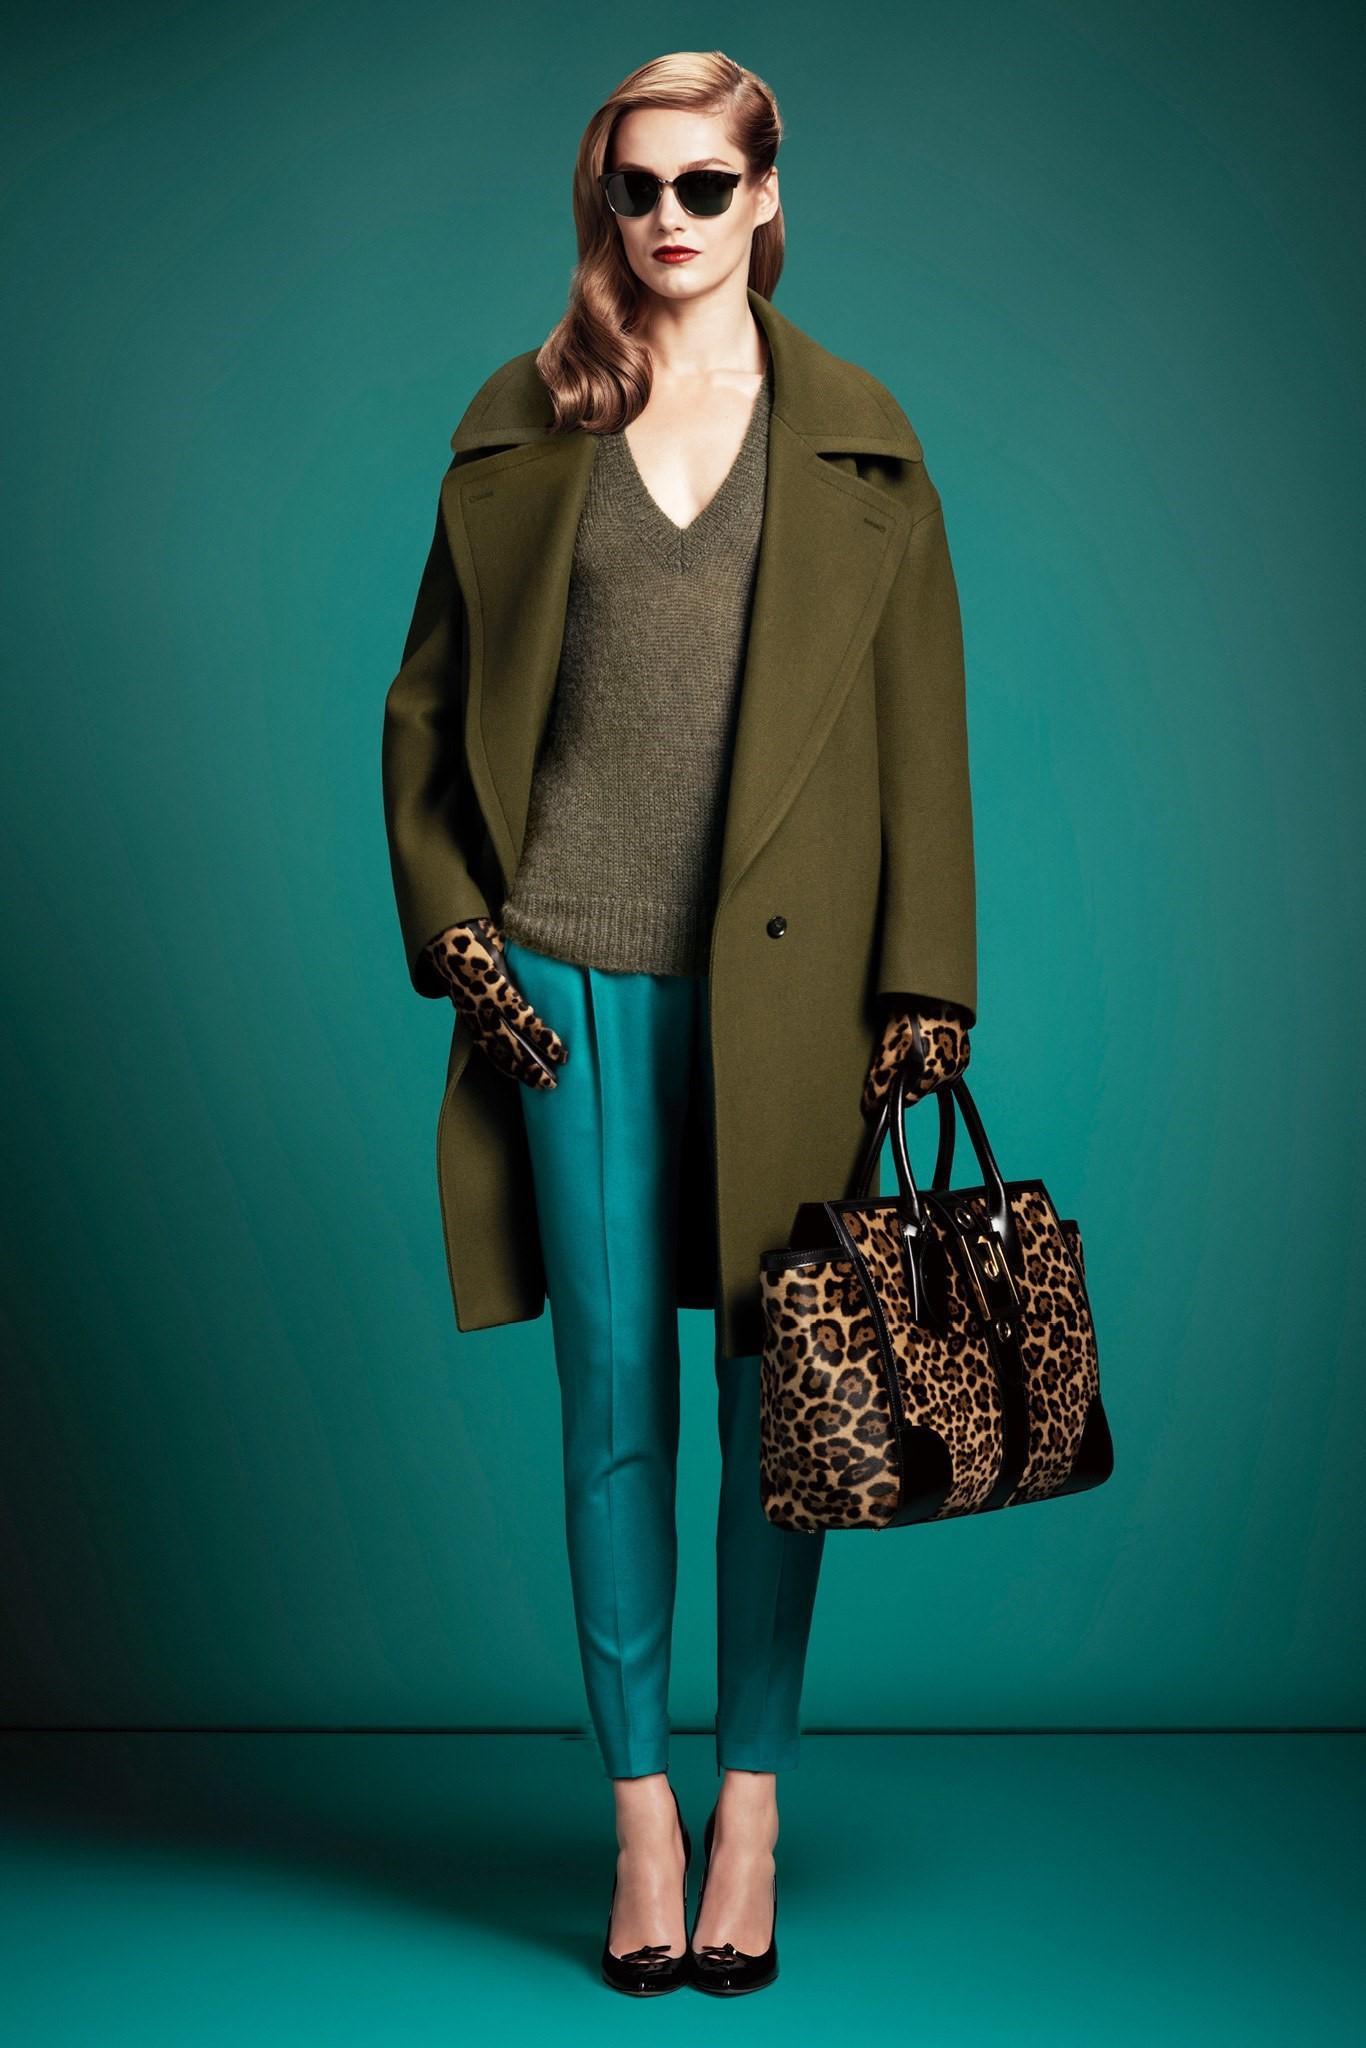 Gucci Pre Fall 2013 
Neue Auslage
Blaugrüne Hose aus Wolle und Kaschmir
$895
Italienisch Sz 40 Ungefähr U.S Sz 4
Zwei Seitentaschen
Zwei Rückentaschen 

Taille: 30